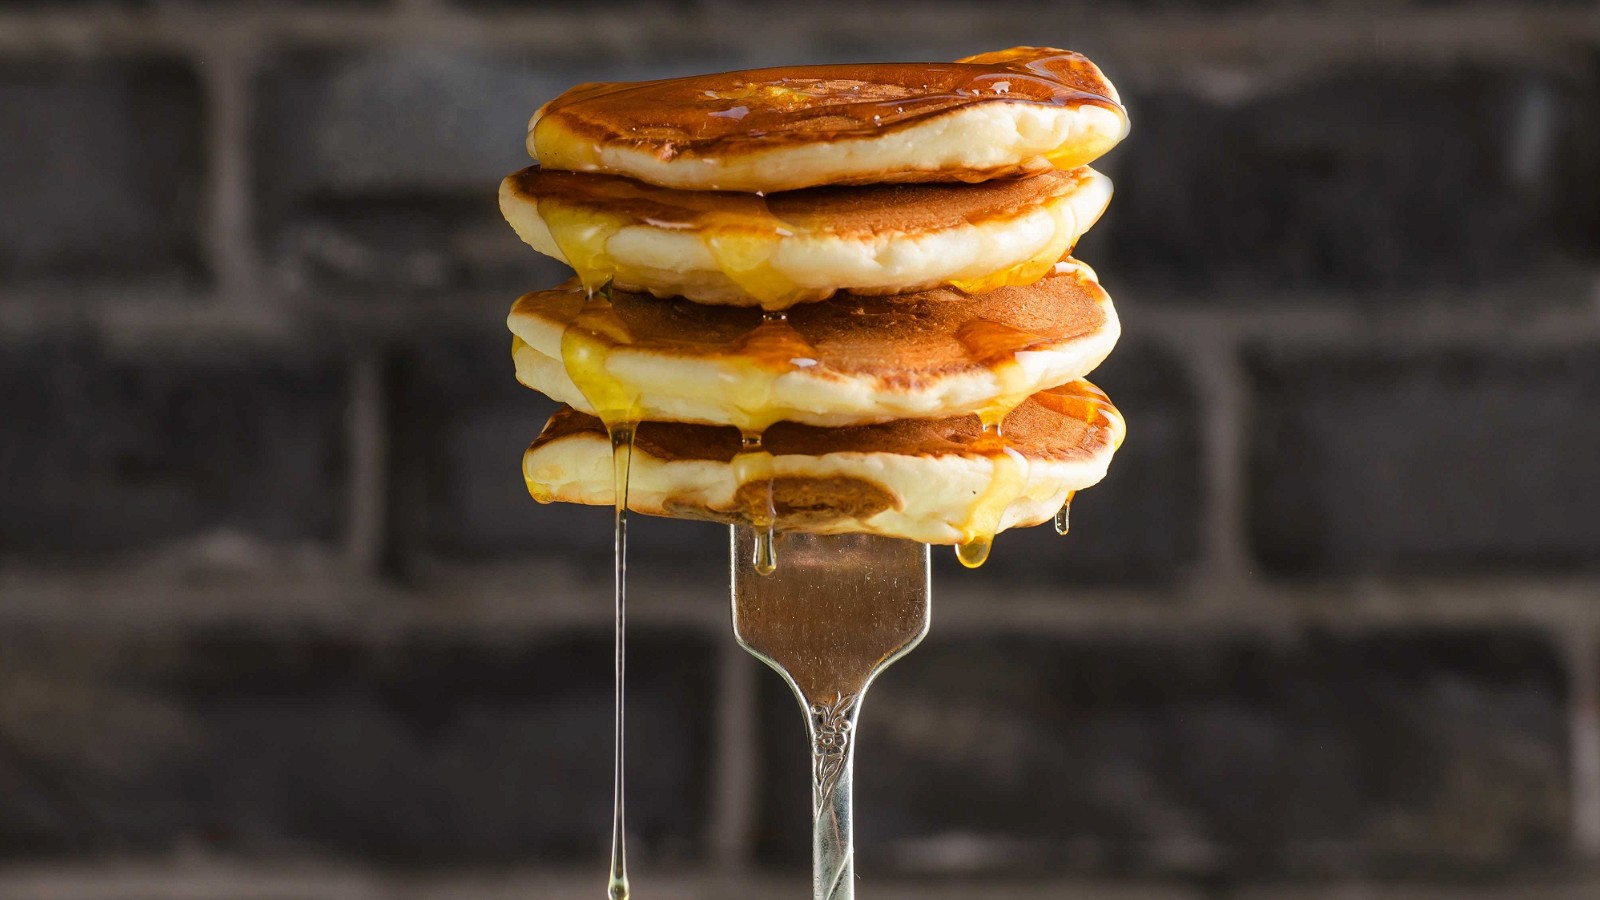 Image of Amerikanus Pancakes 